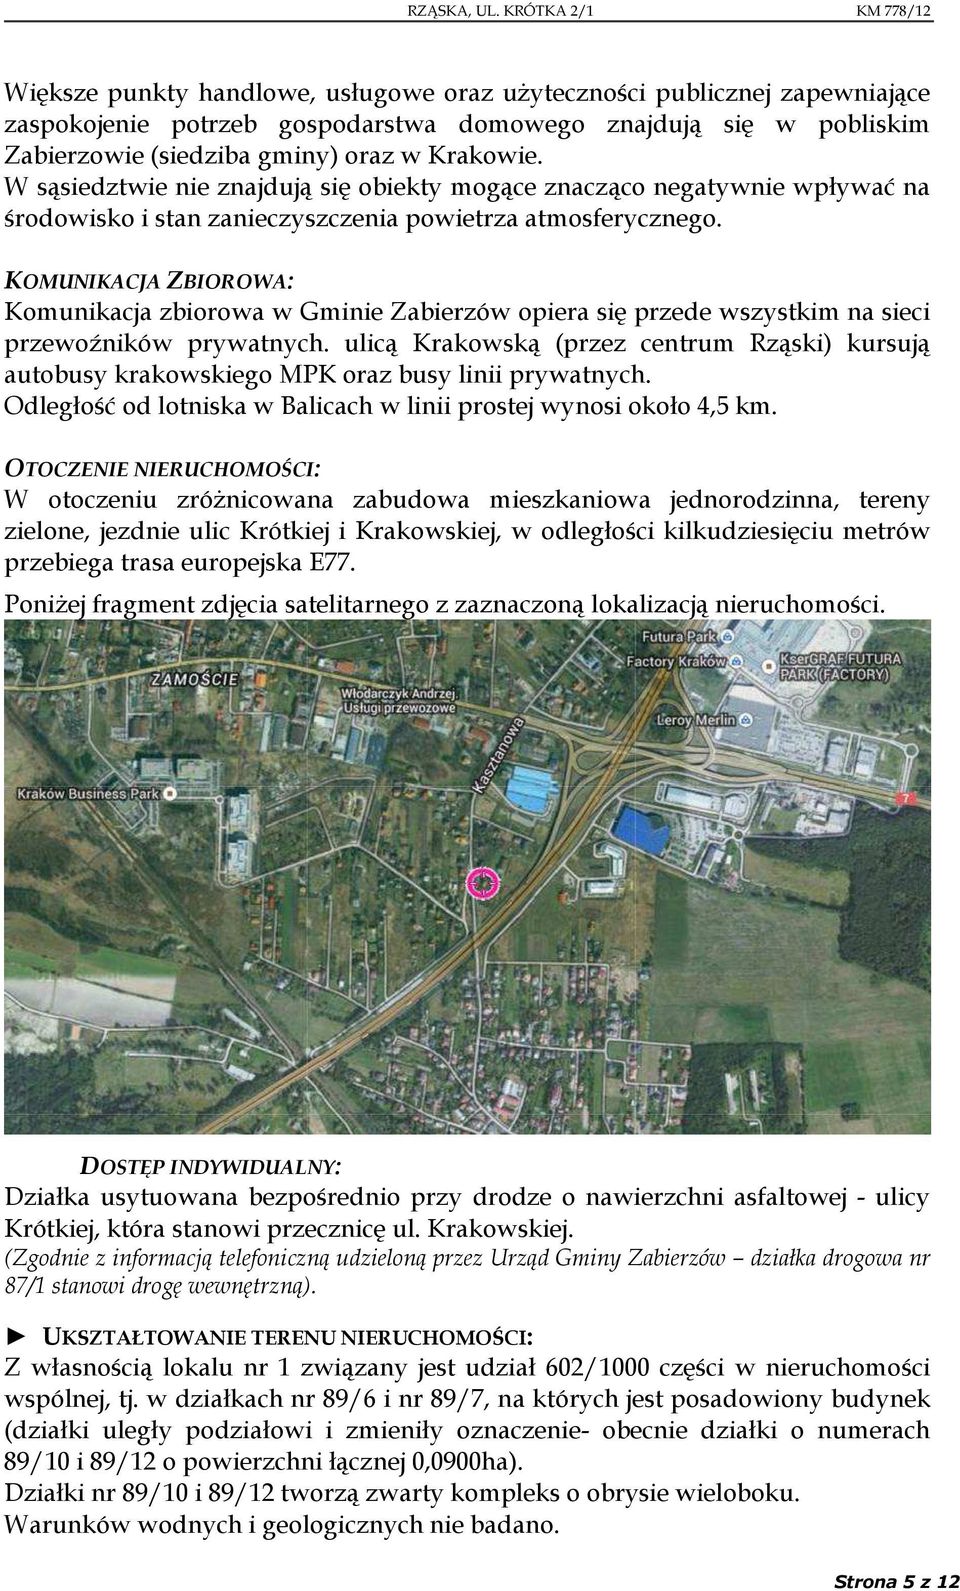 KOMUNIKACJA ZBIOROWA: Komunikacja zbiorowa w Gminie Zabierzów opiera się przede wszystkim na sieci przewoźników prywatnych.